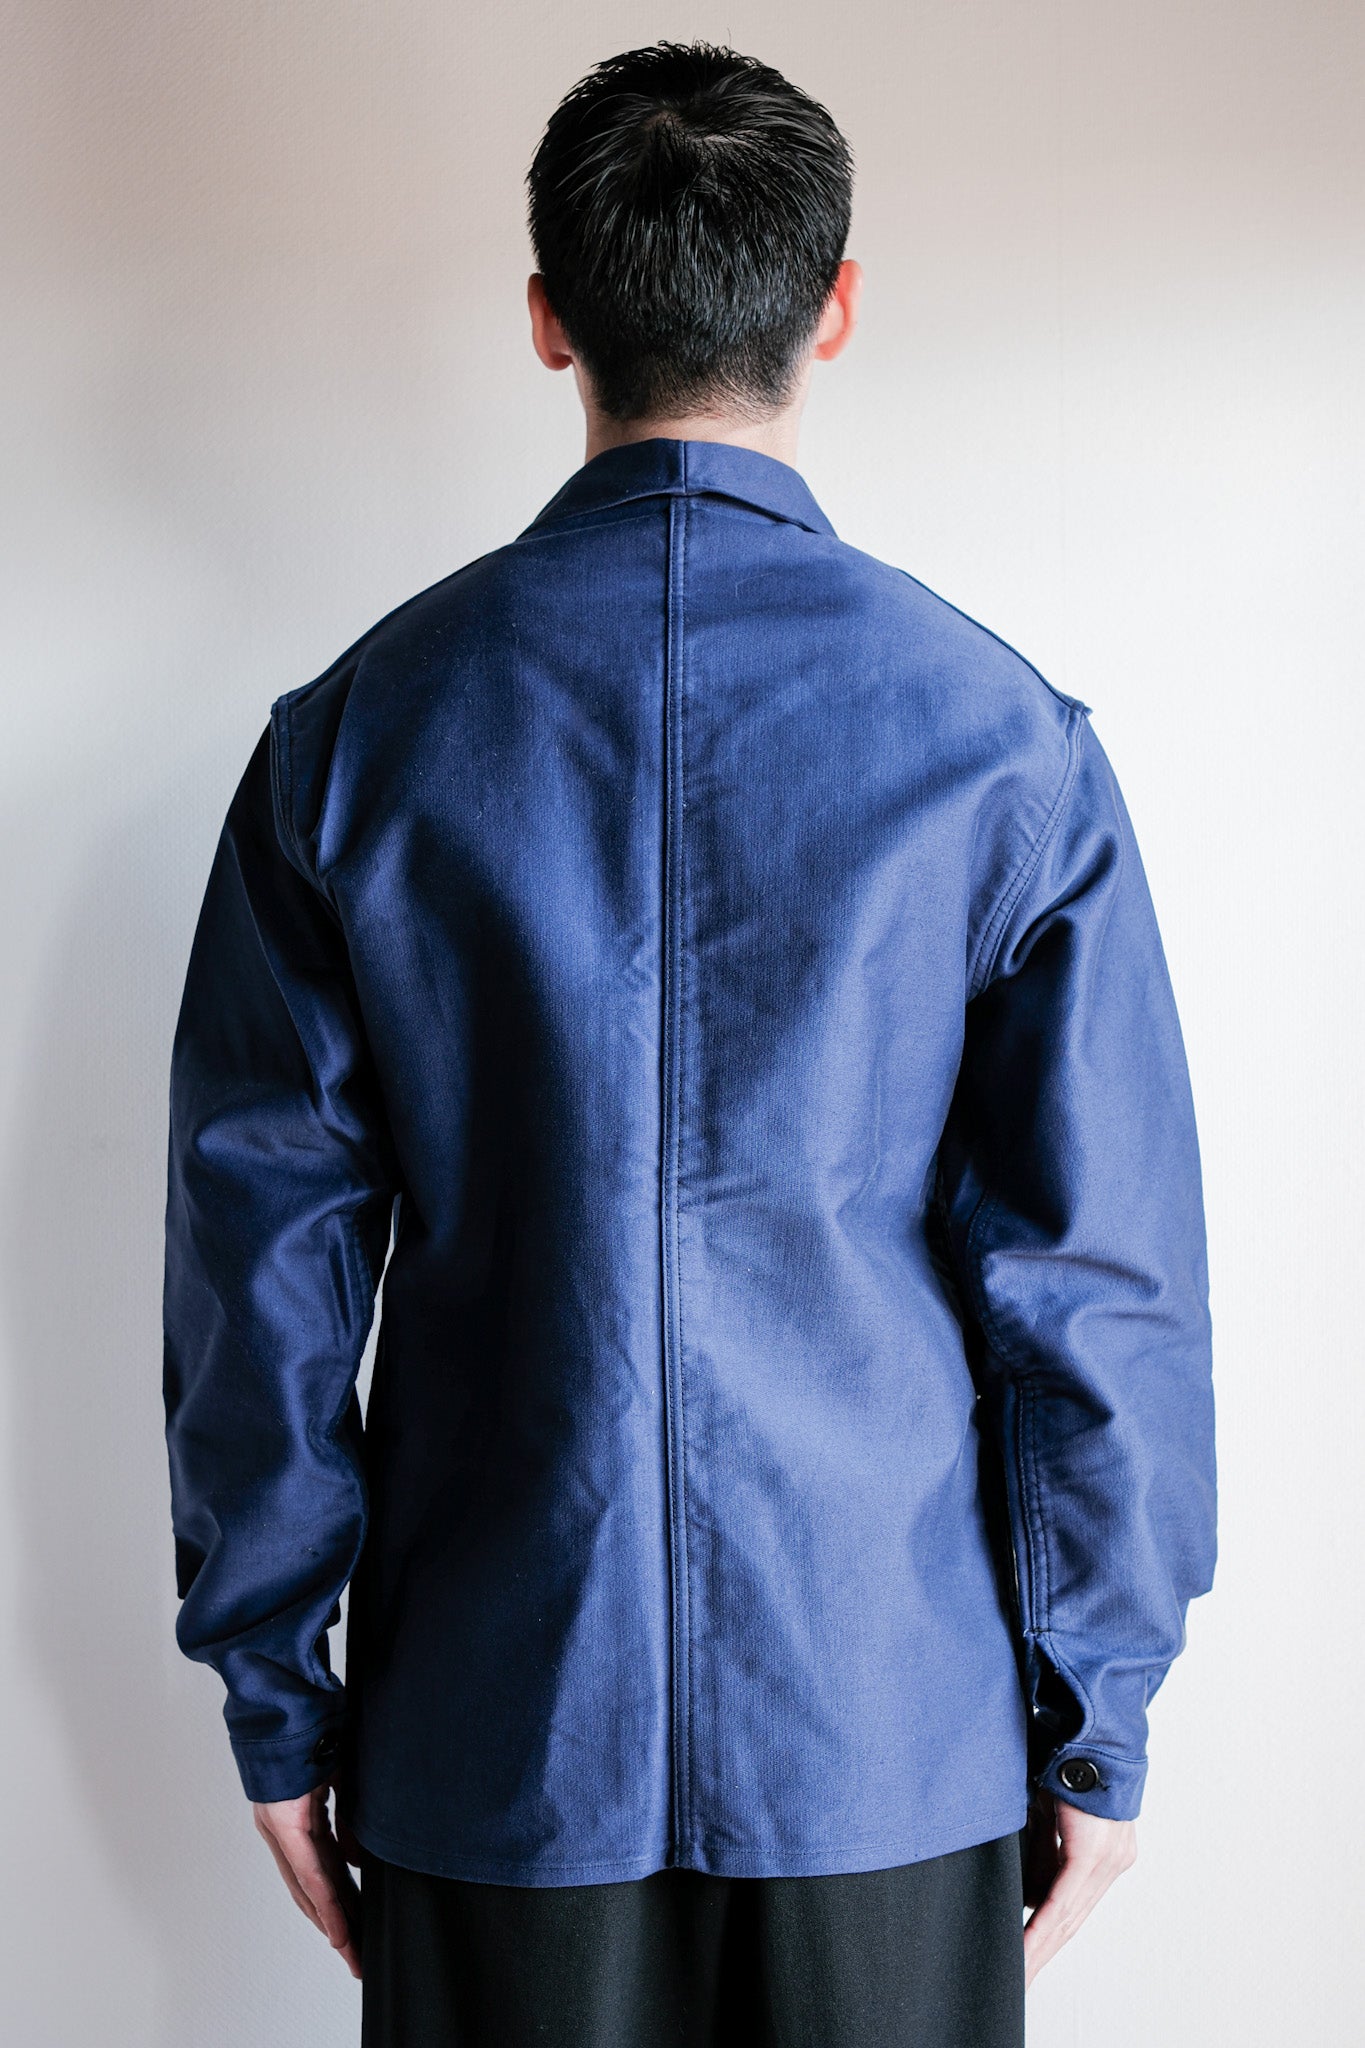 [〜50年代]法國復古藍色摩爾斯金夾克夾克尺寸。44“勒蒙特·米歇爾”“死庫存”